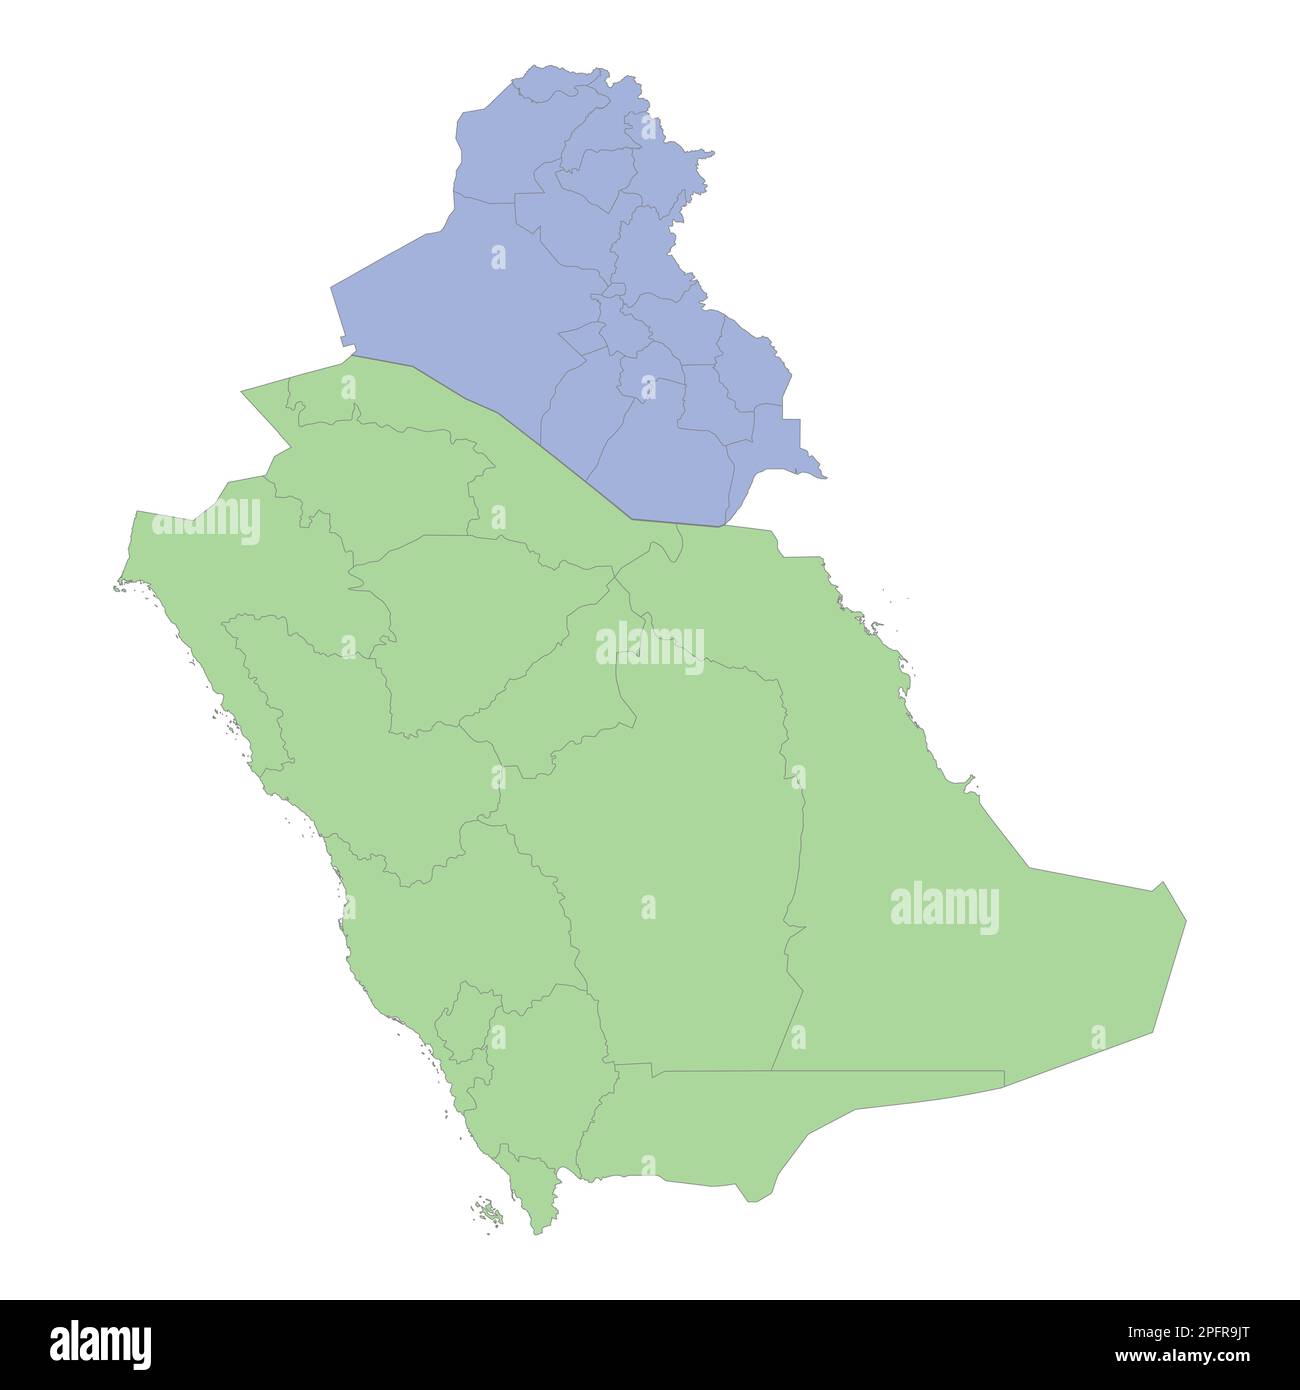 Mappa politica di alta qualità dell'Arabia Saudita e dell'Iraq con i confini delle regioni o delle province. Illustrazione vettoriale Illustrazione Vettoriale